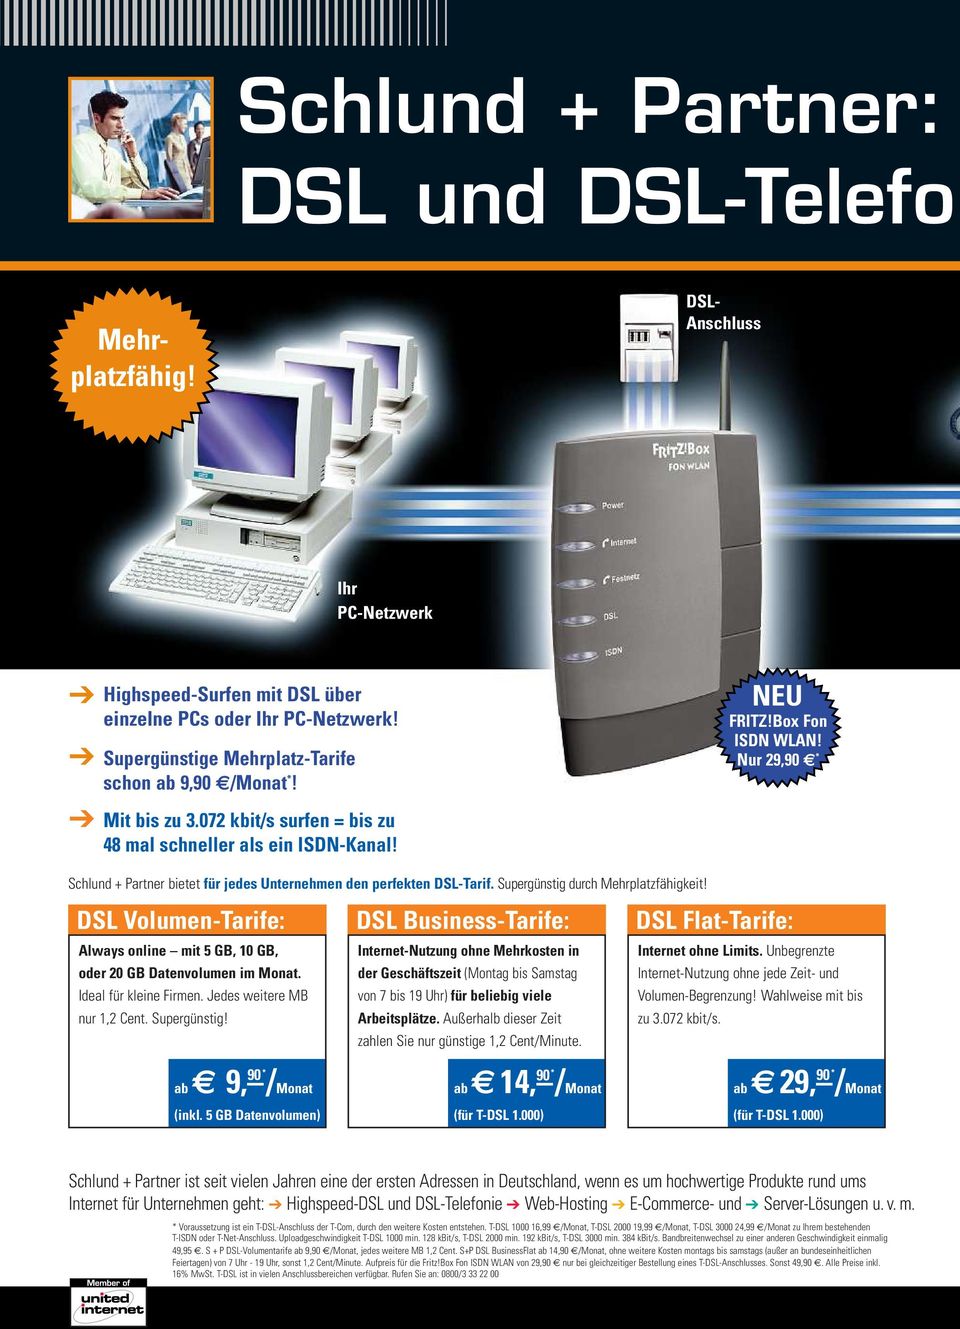 Schlund + Partner bietet für jedes Unternehmen den perfekten DSL-Tarif. Supergünstig durch Mehrplatzfähigkeit! DSL Volumen-Tarife: Always online mit 5GB, 10 GB, oder 20 GB Datenvolumen im Monat.